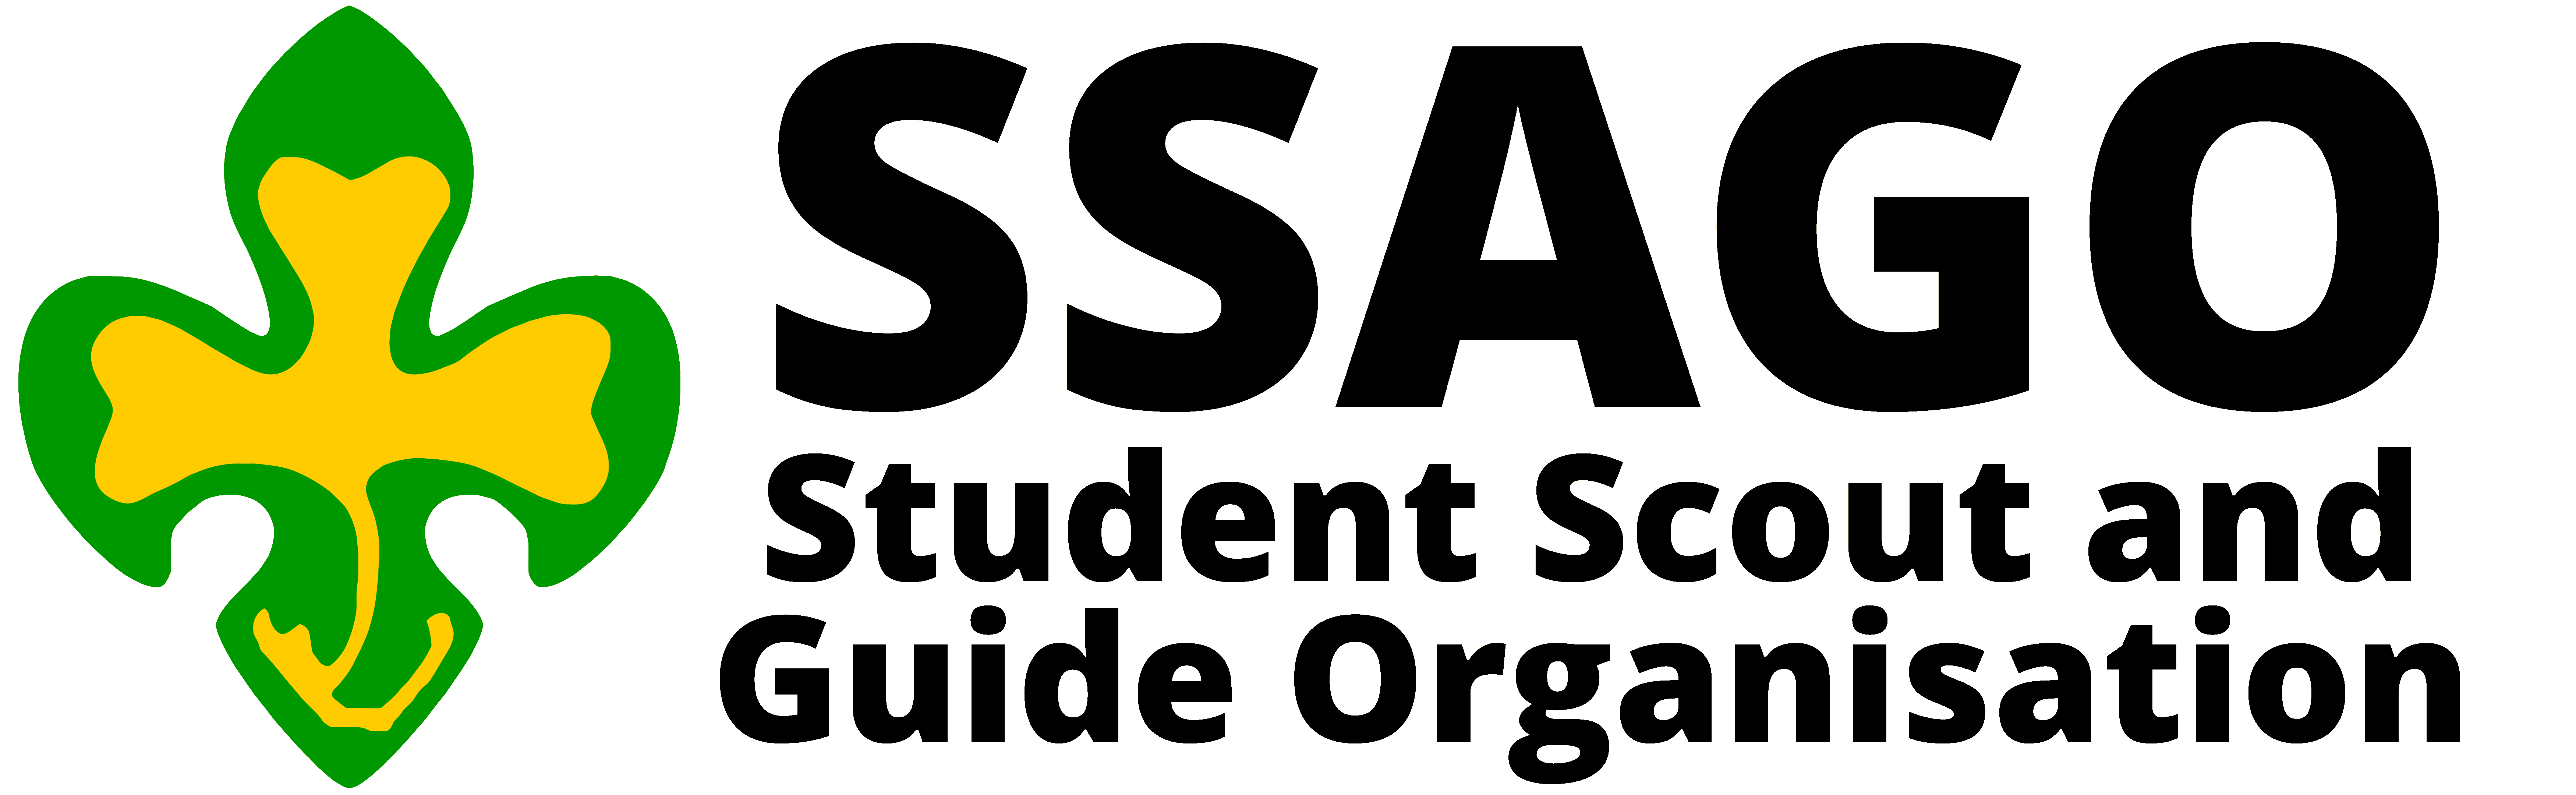 SSAGO logo